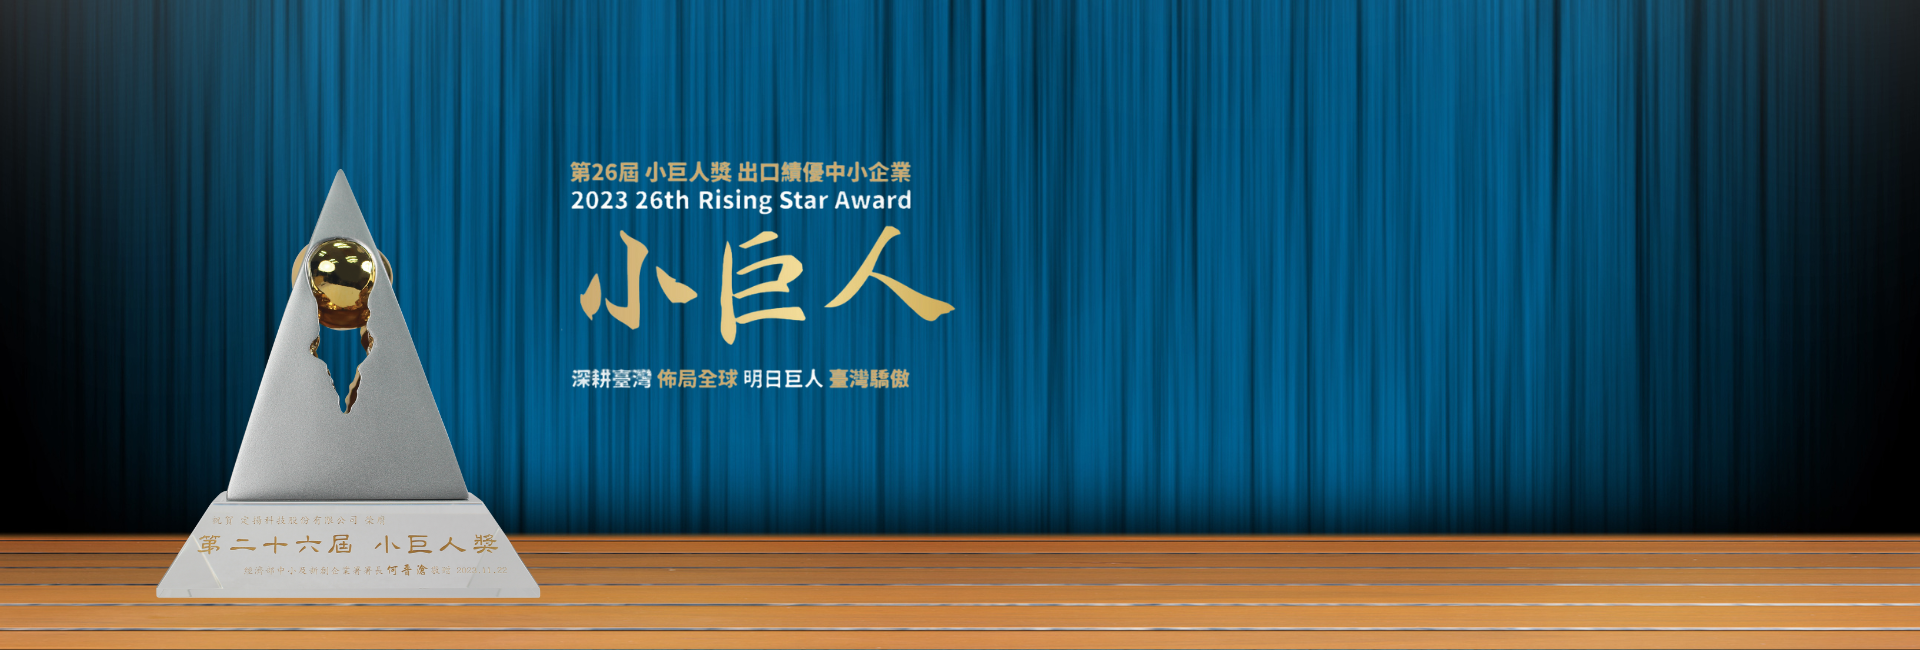 26th  Rising Star Award